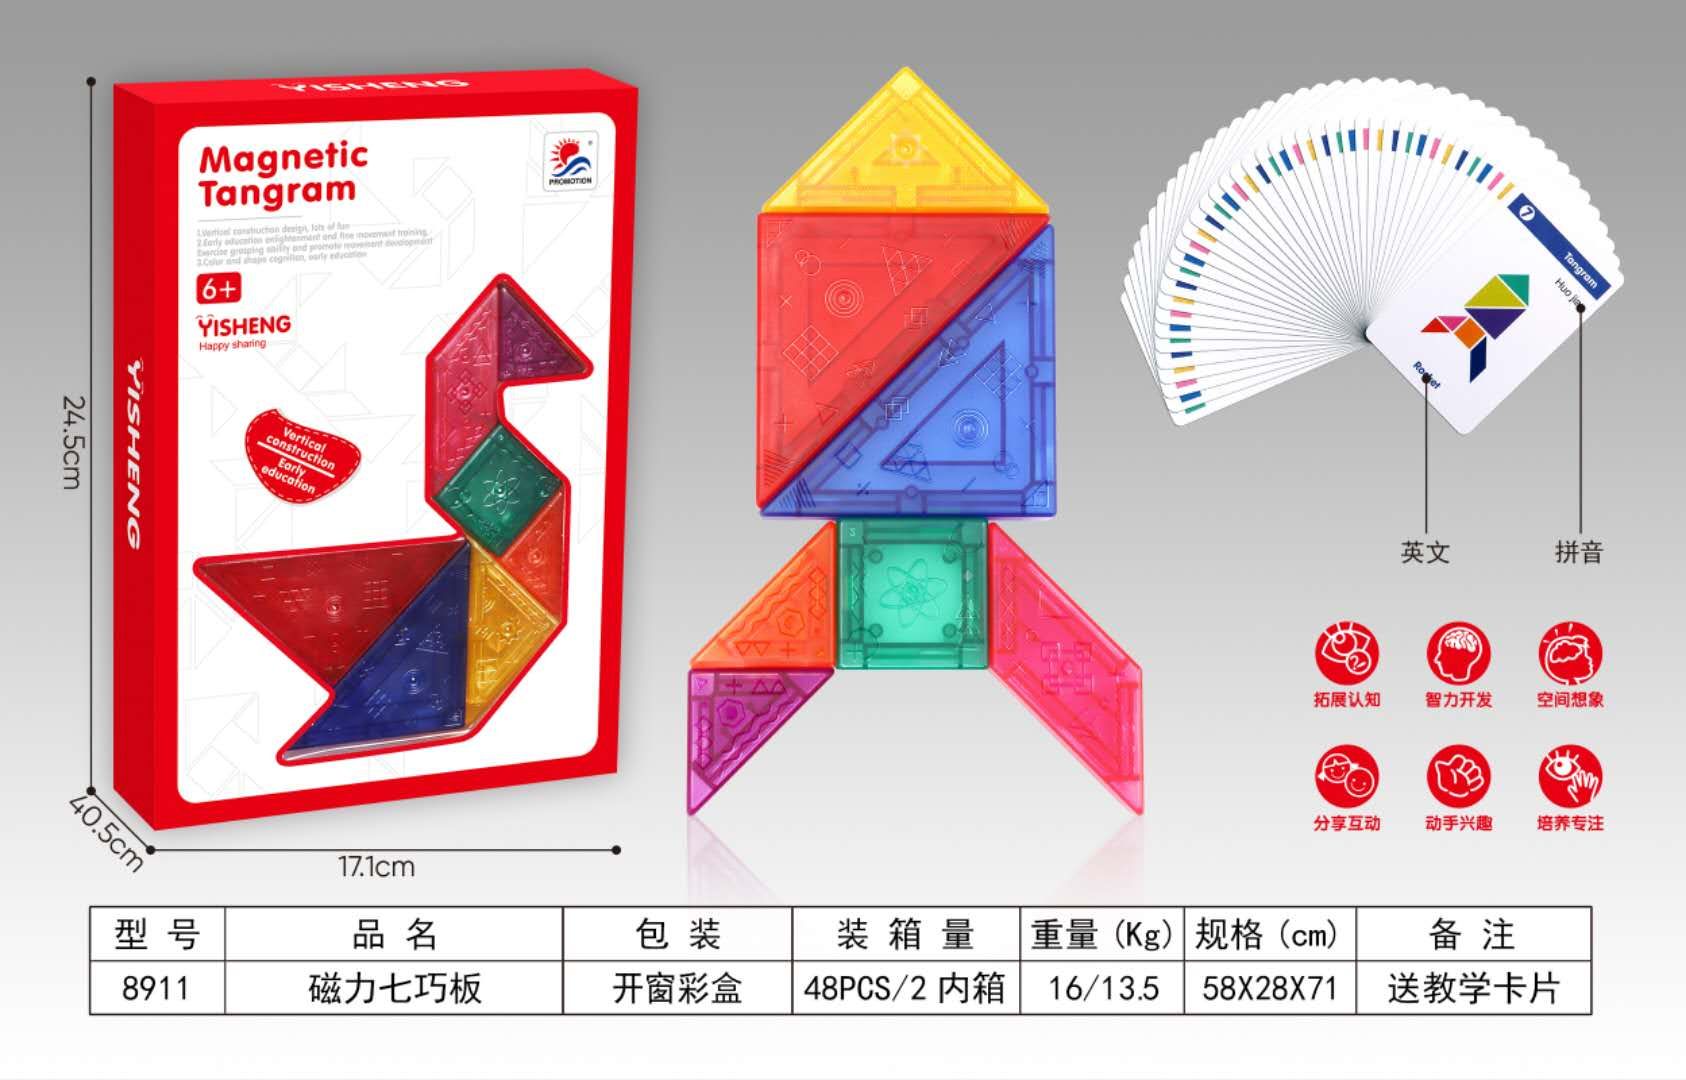 立体高强磁 磁力七巧板 产品2公分厚度 培养孩子动手能力 送教学卡片 益智玩具 一件48盒详情图2